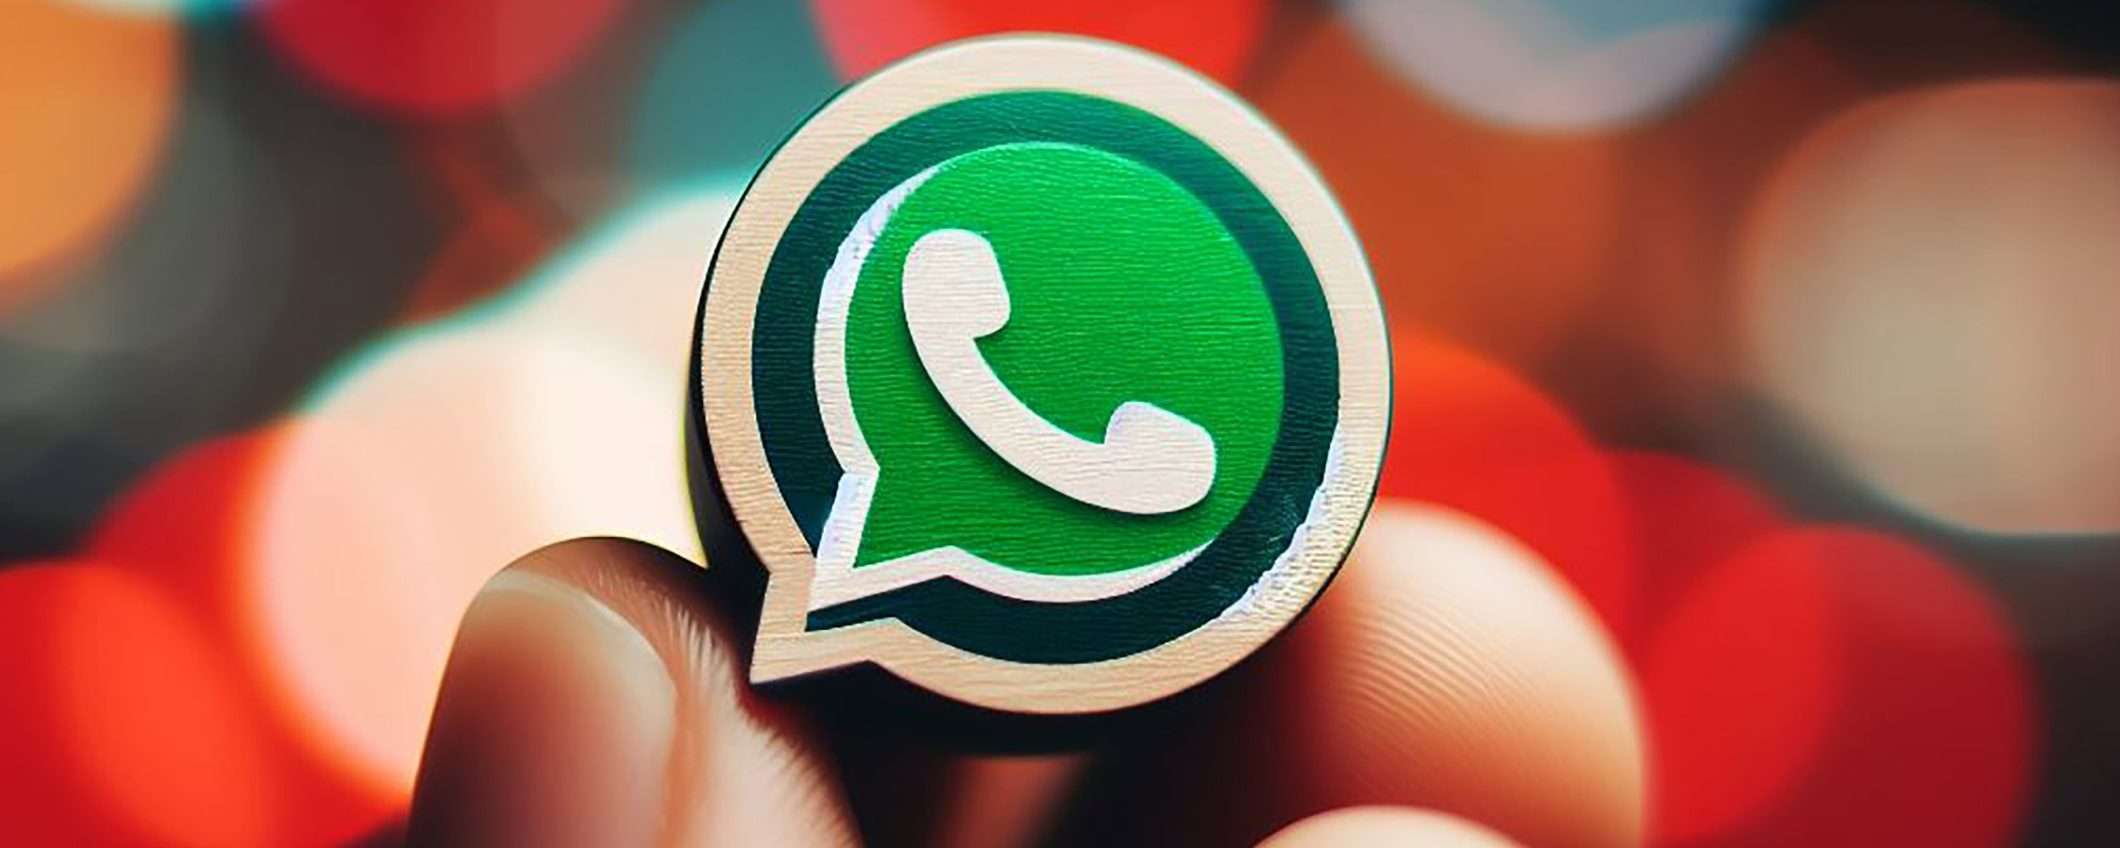 WhatsApp, nuovi termini di servizio: cosa cambia